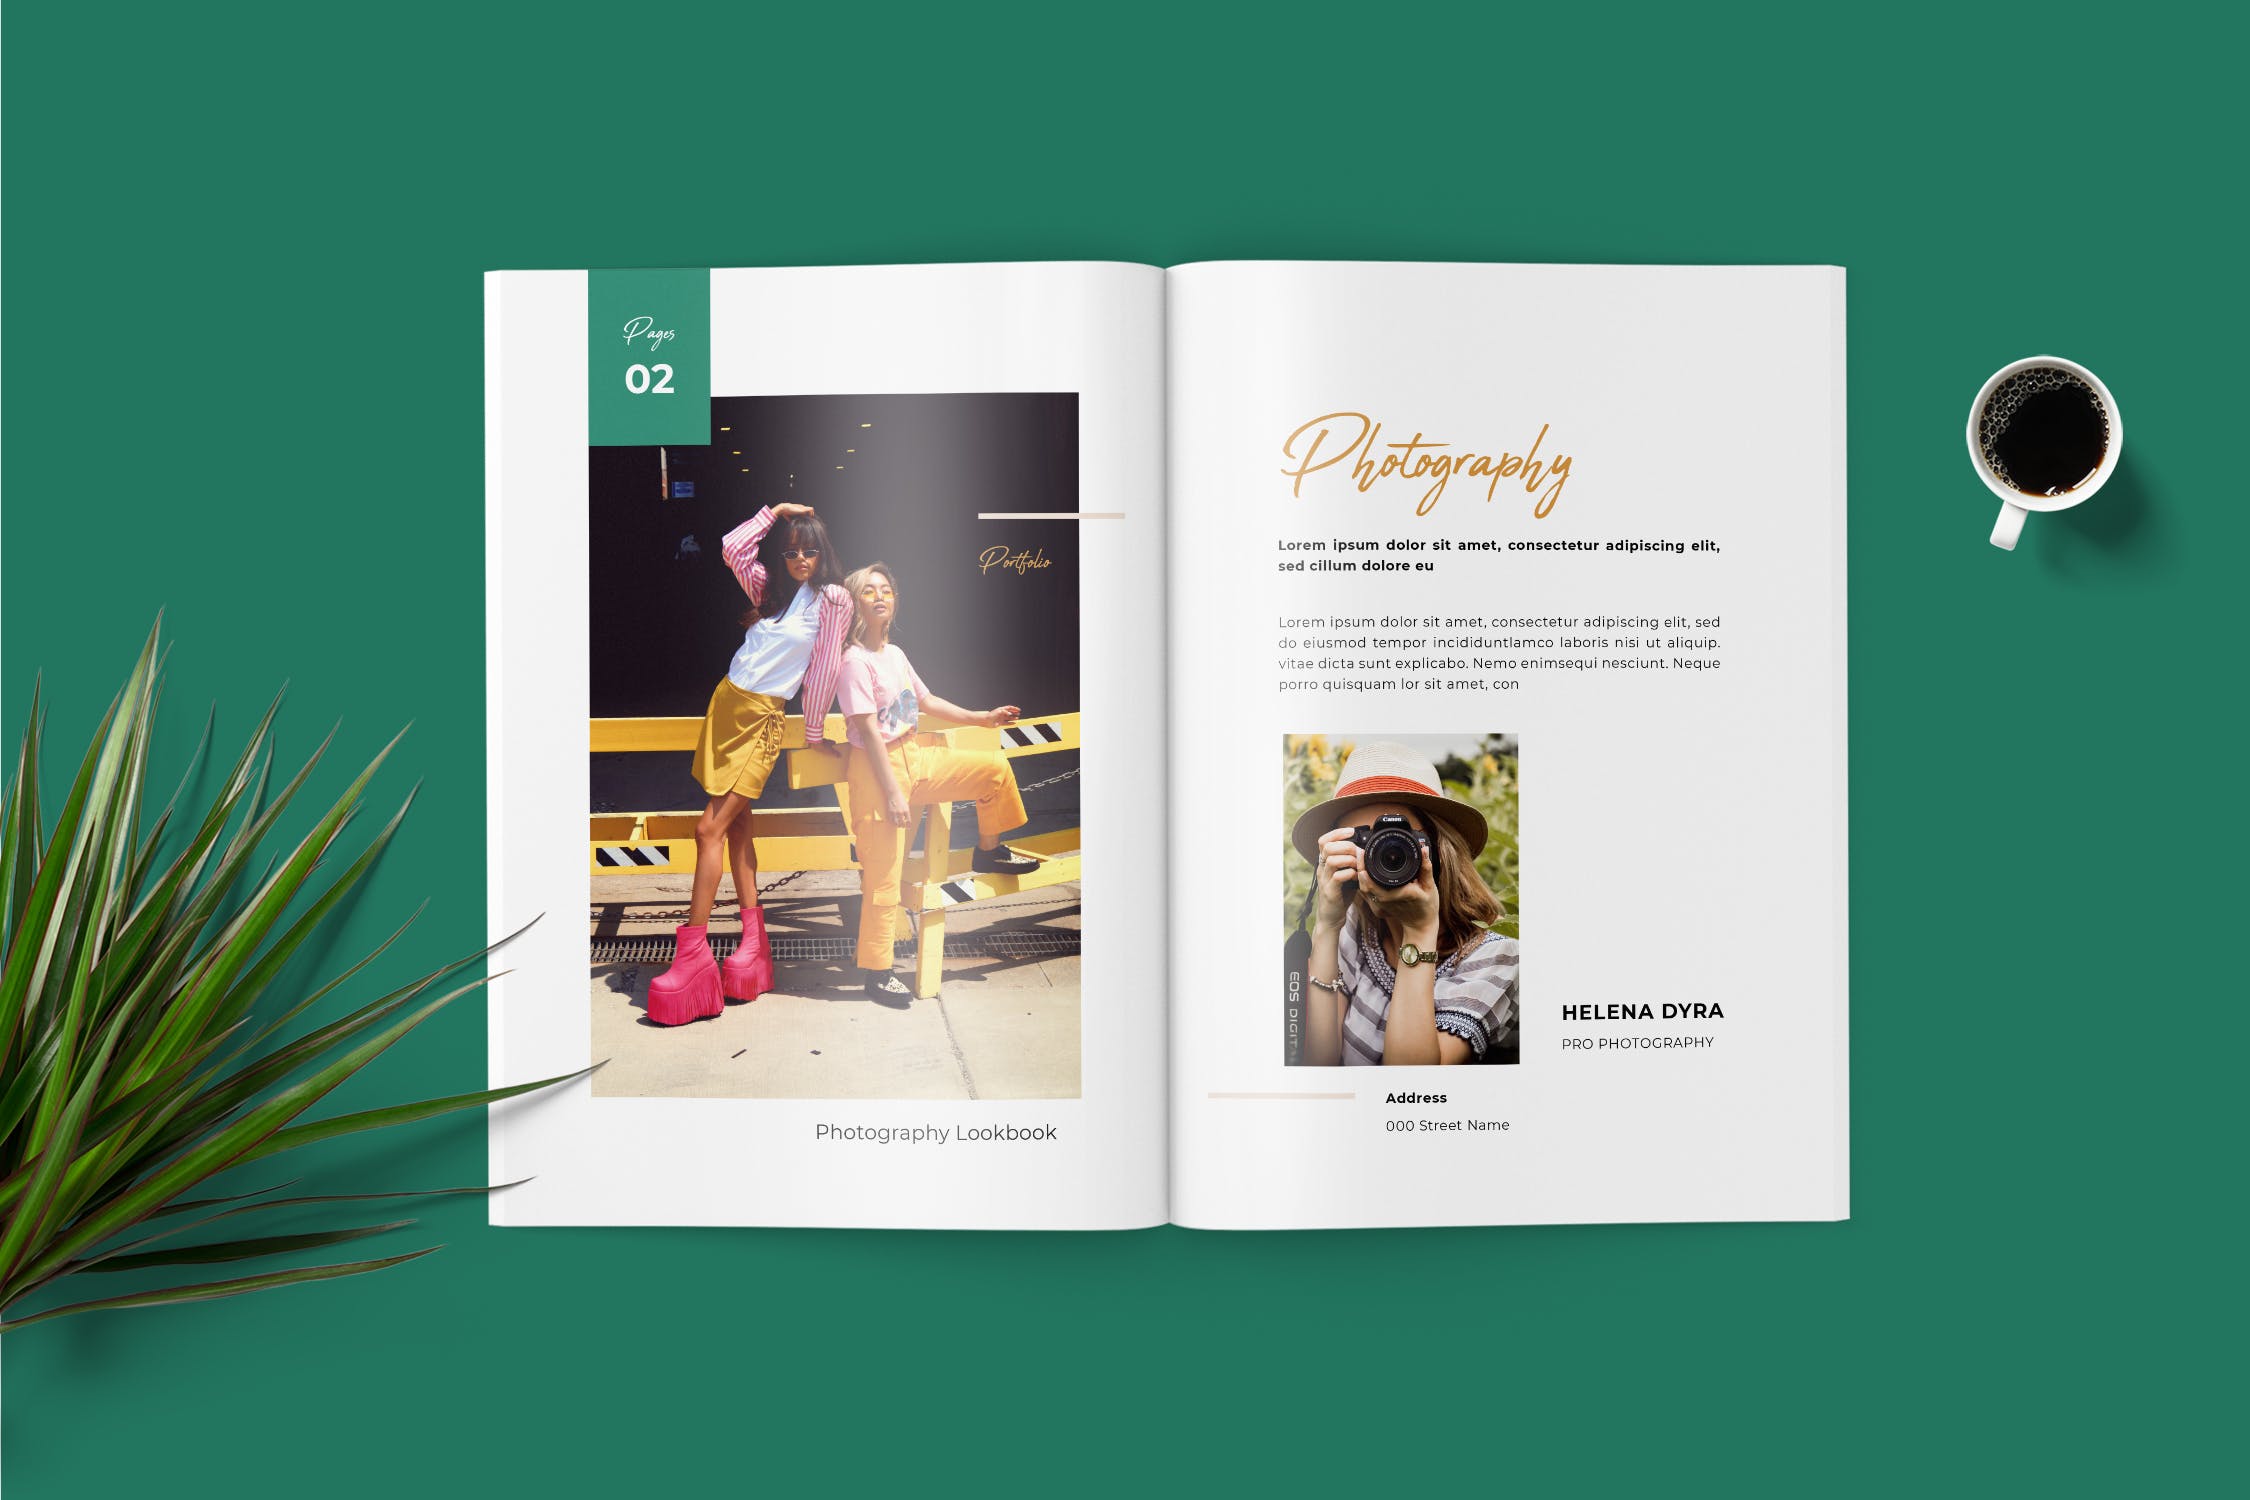 时尚服饰品牌公司新品上市产品手册设计模板 Fashion Lookbook Portfolio插图(2)